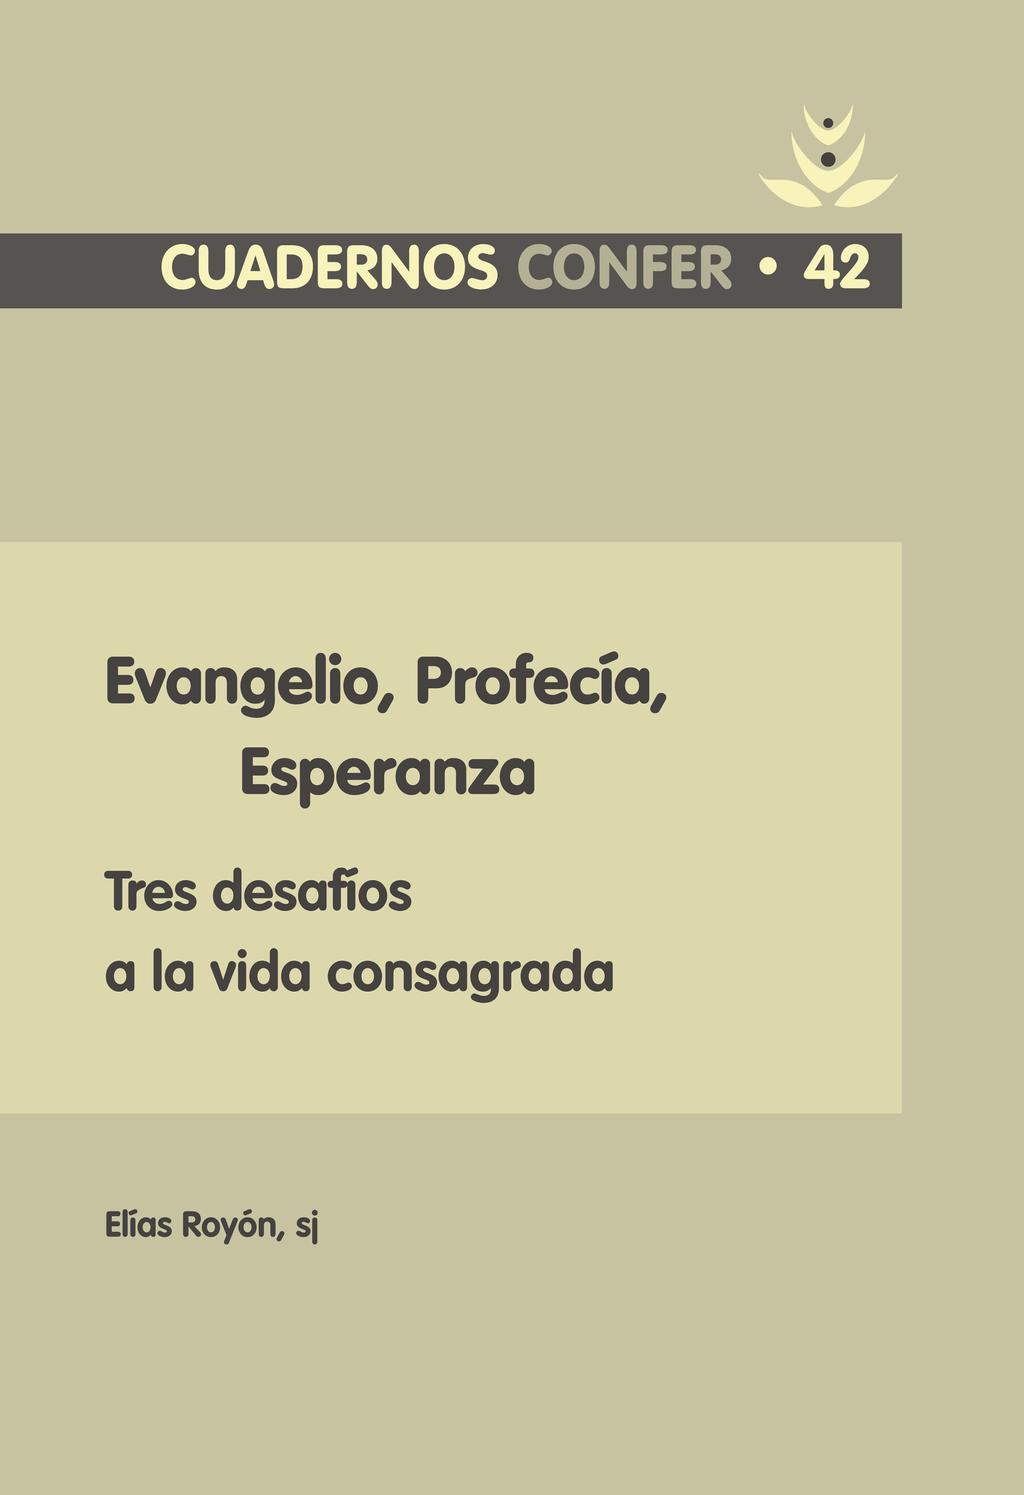 Edita Conferencia Española de Religiosos Editorial CONFER C/ Núñez de Balboa, 115 - Bis 28006 Madrid Correo electrónico: